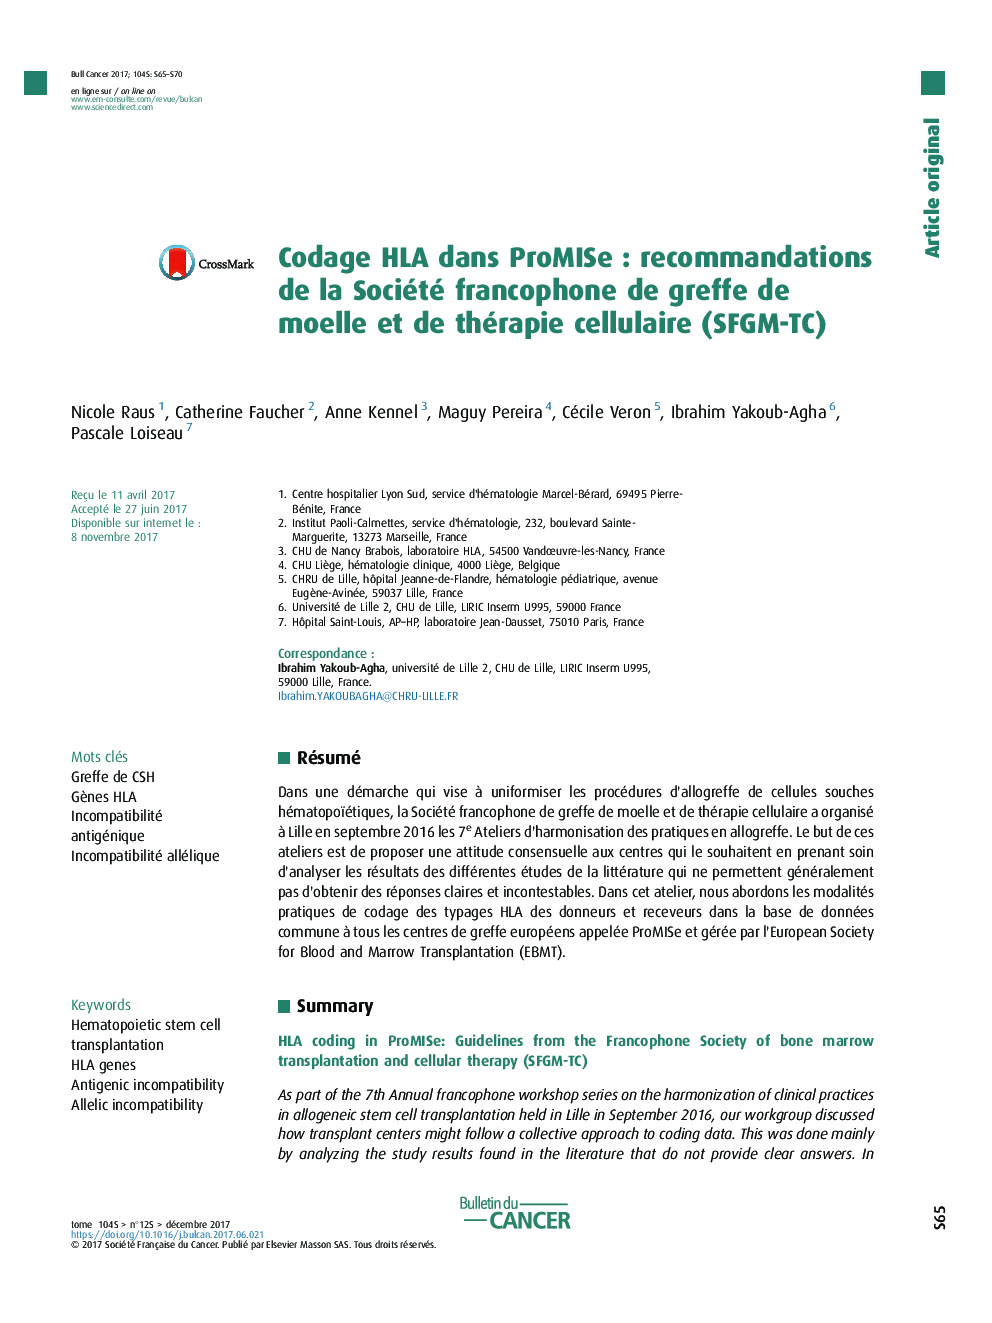 Codage HLA dans ProMISeÂ : recommandations de la Société francophone de greffe de moelle et de thérapie cellulaire (SFGM-TC)